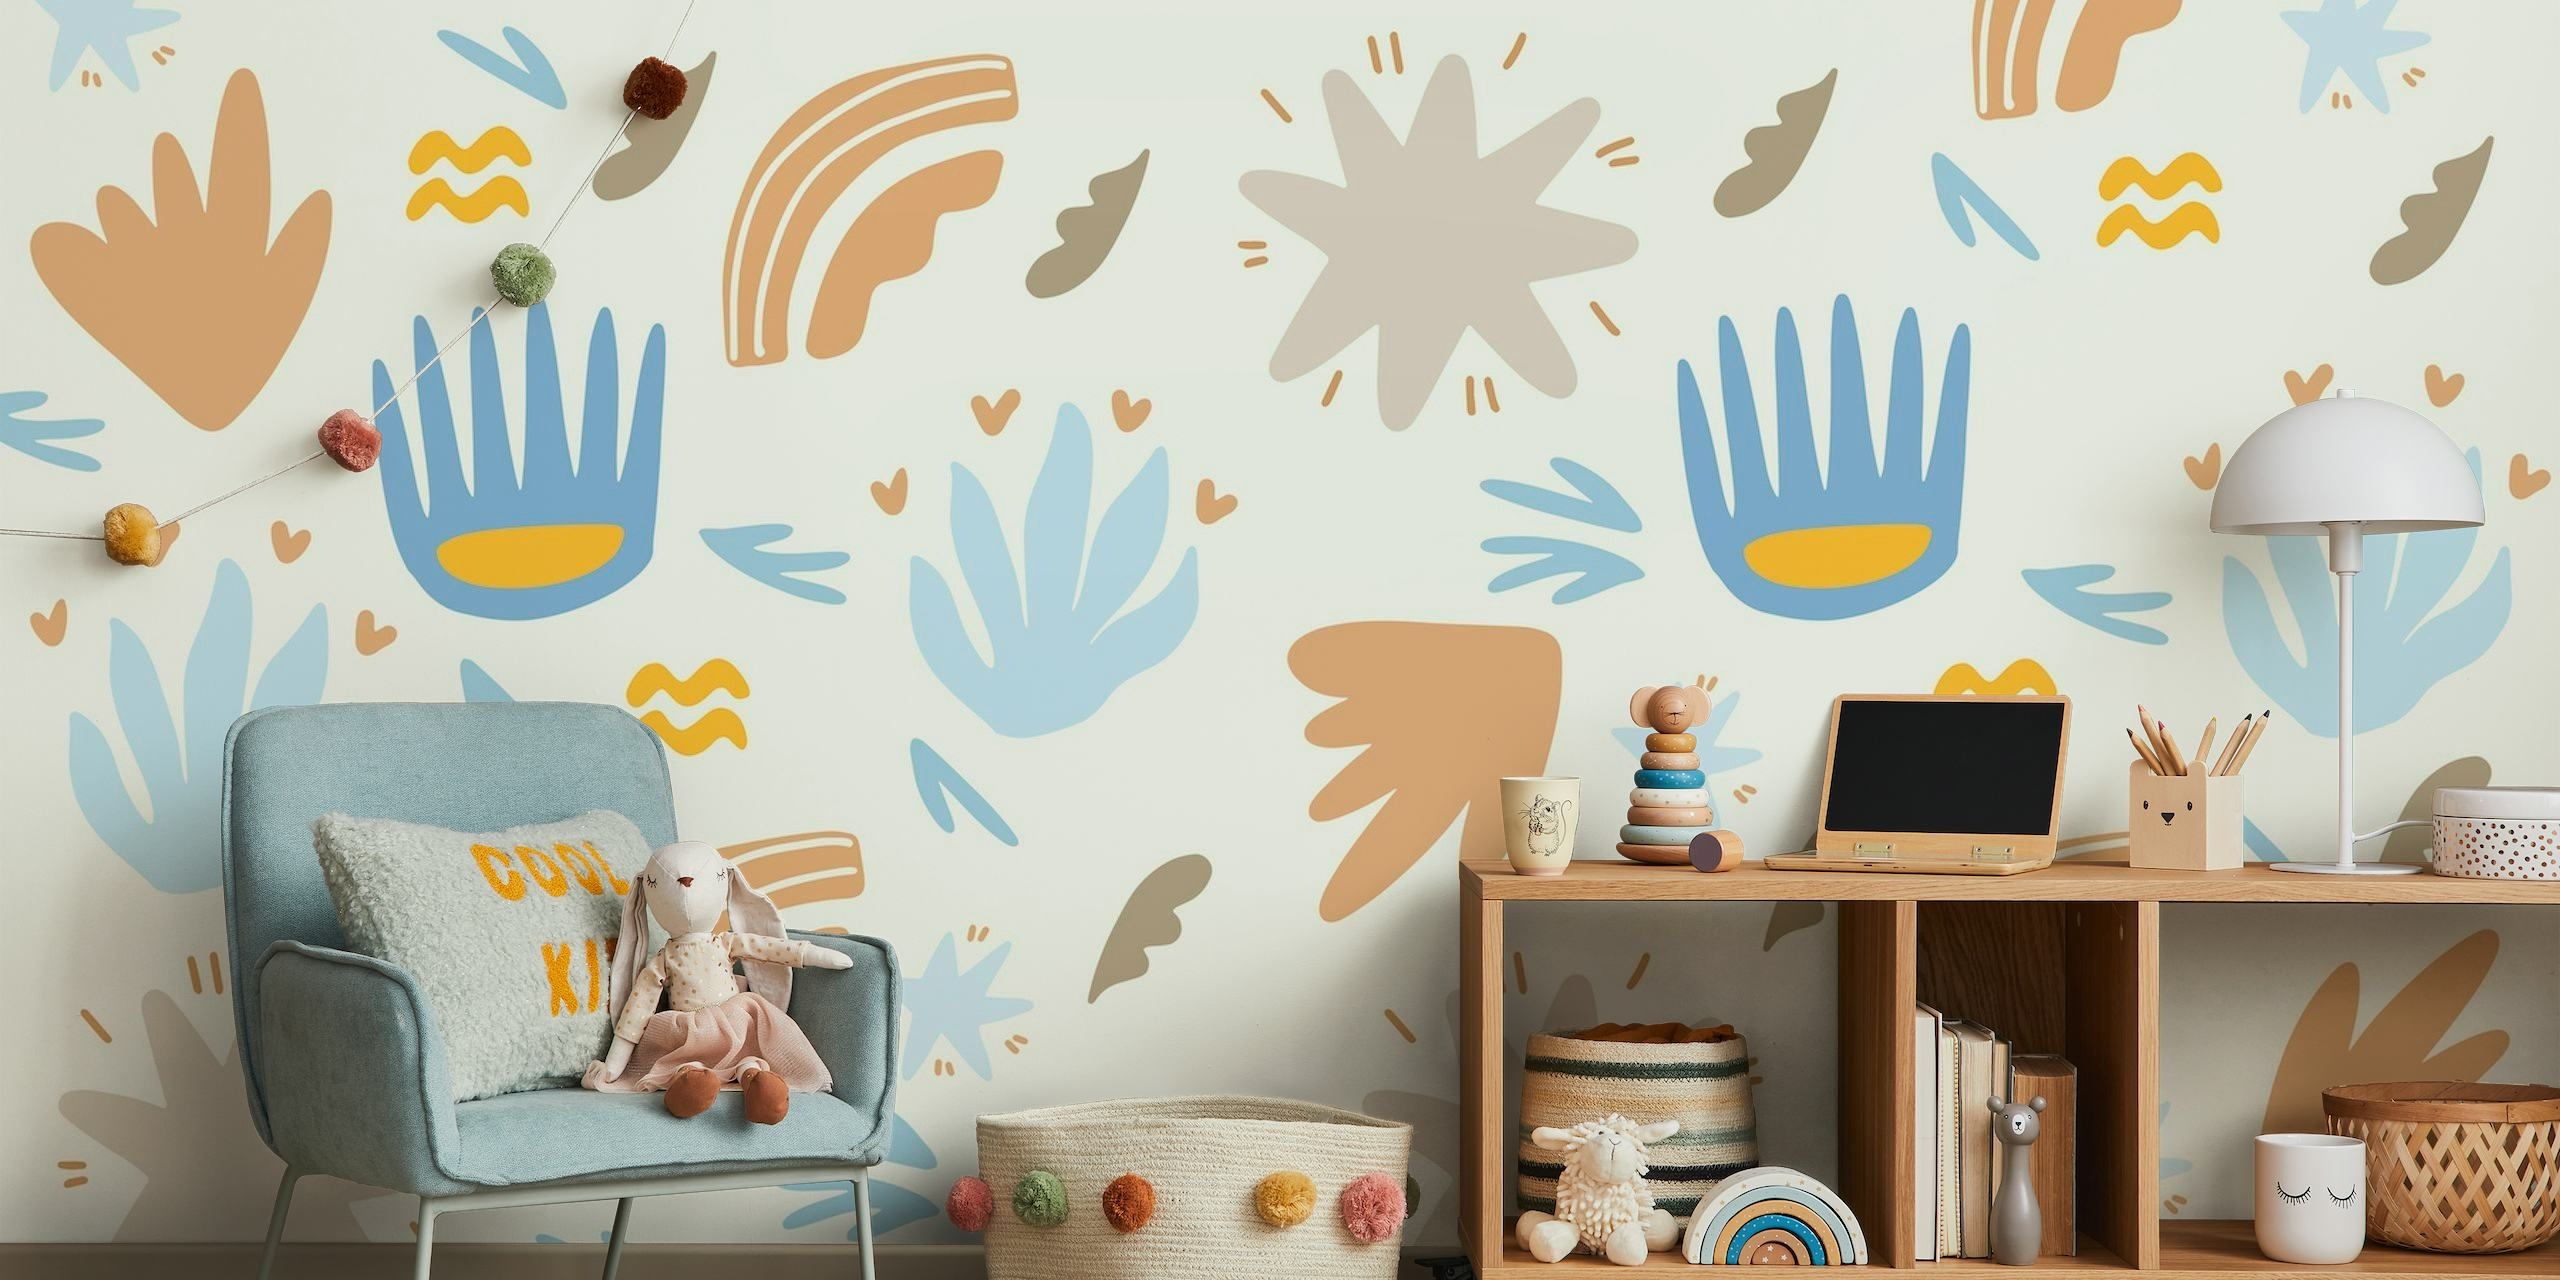 Papier peint mural pour enfants sur le thème de l'été avec des formes abstraites et des motifs fantaisistes en bleu, ocre et terre cuite